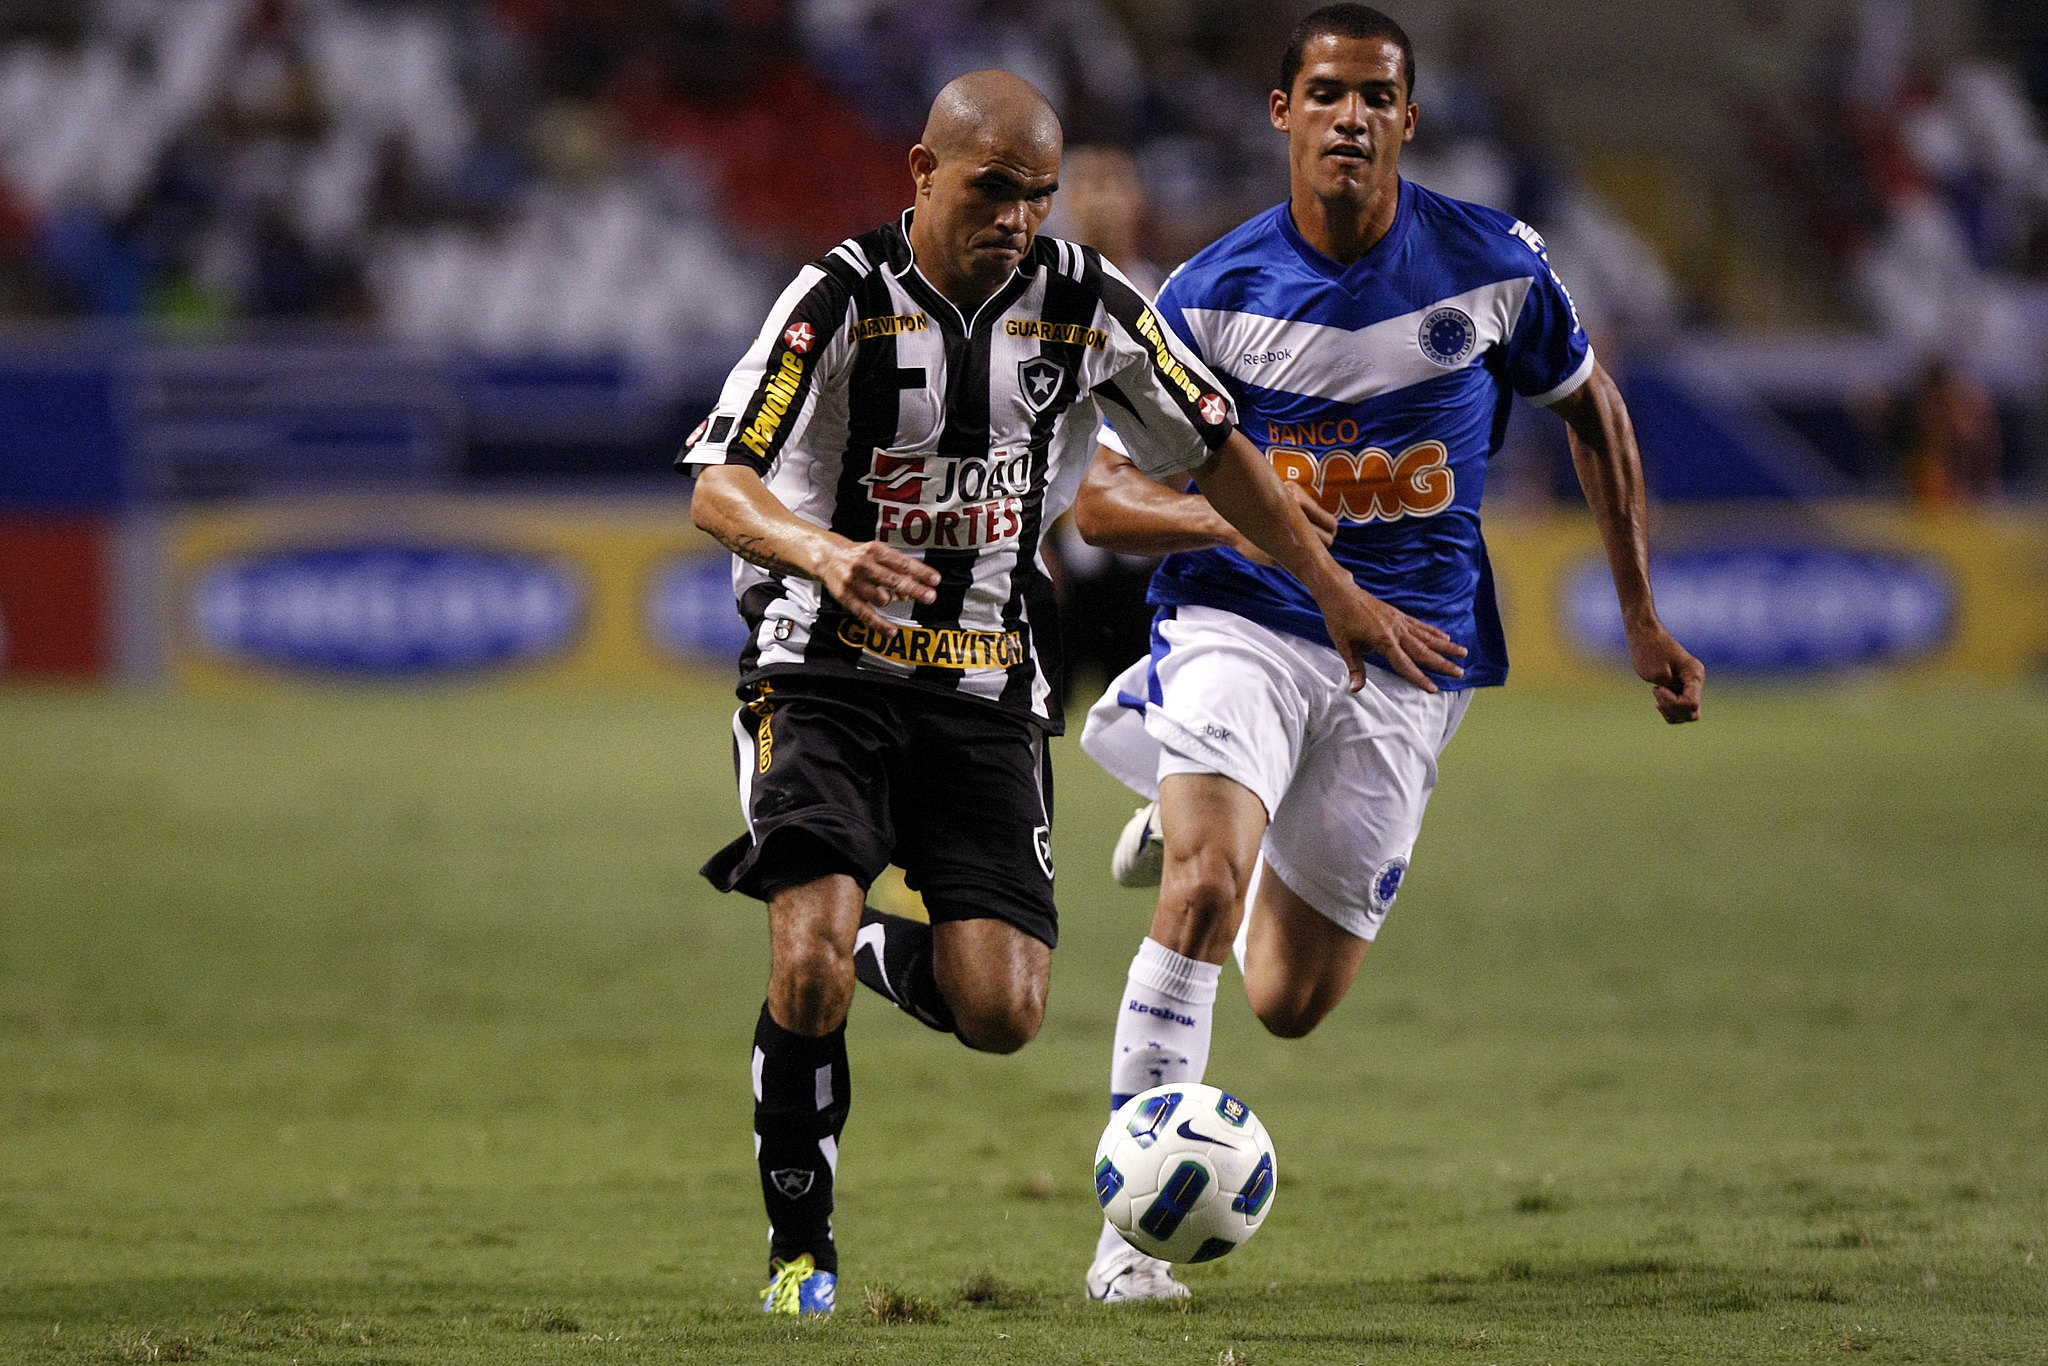 Alessandro é auxiliar-técnico do time sub-19 do Athletico Paranaense.